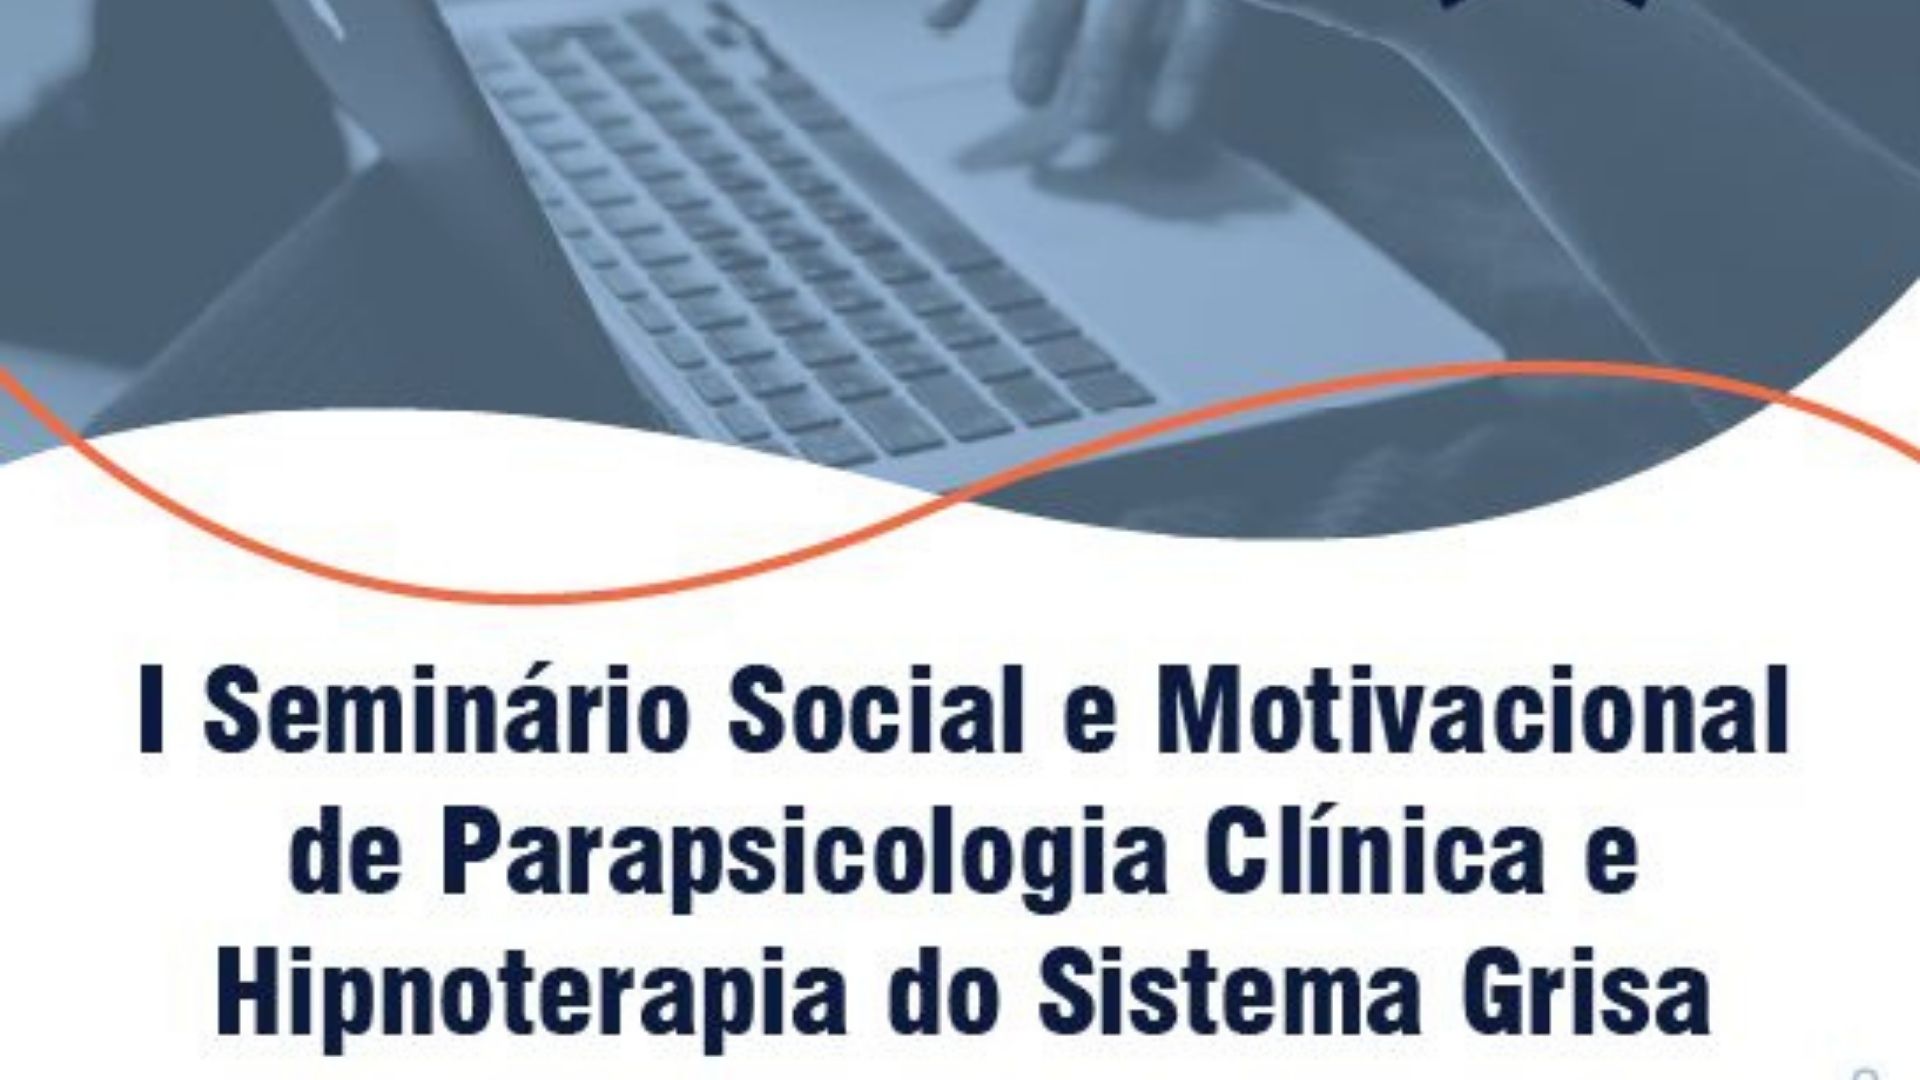 I Seminário Social e Motivacional de Parapsicologia Clínica e Hipnoterapia do Sistema Grisa